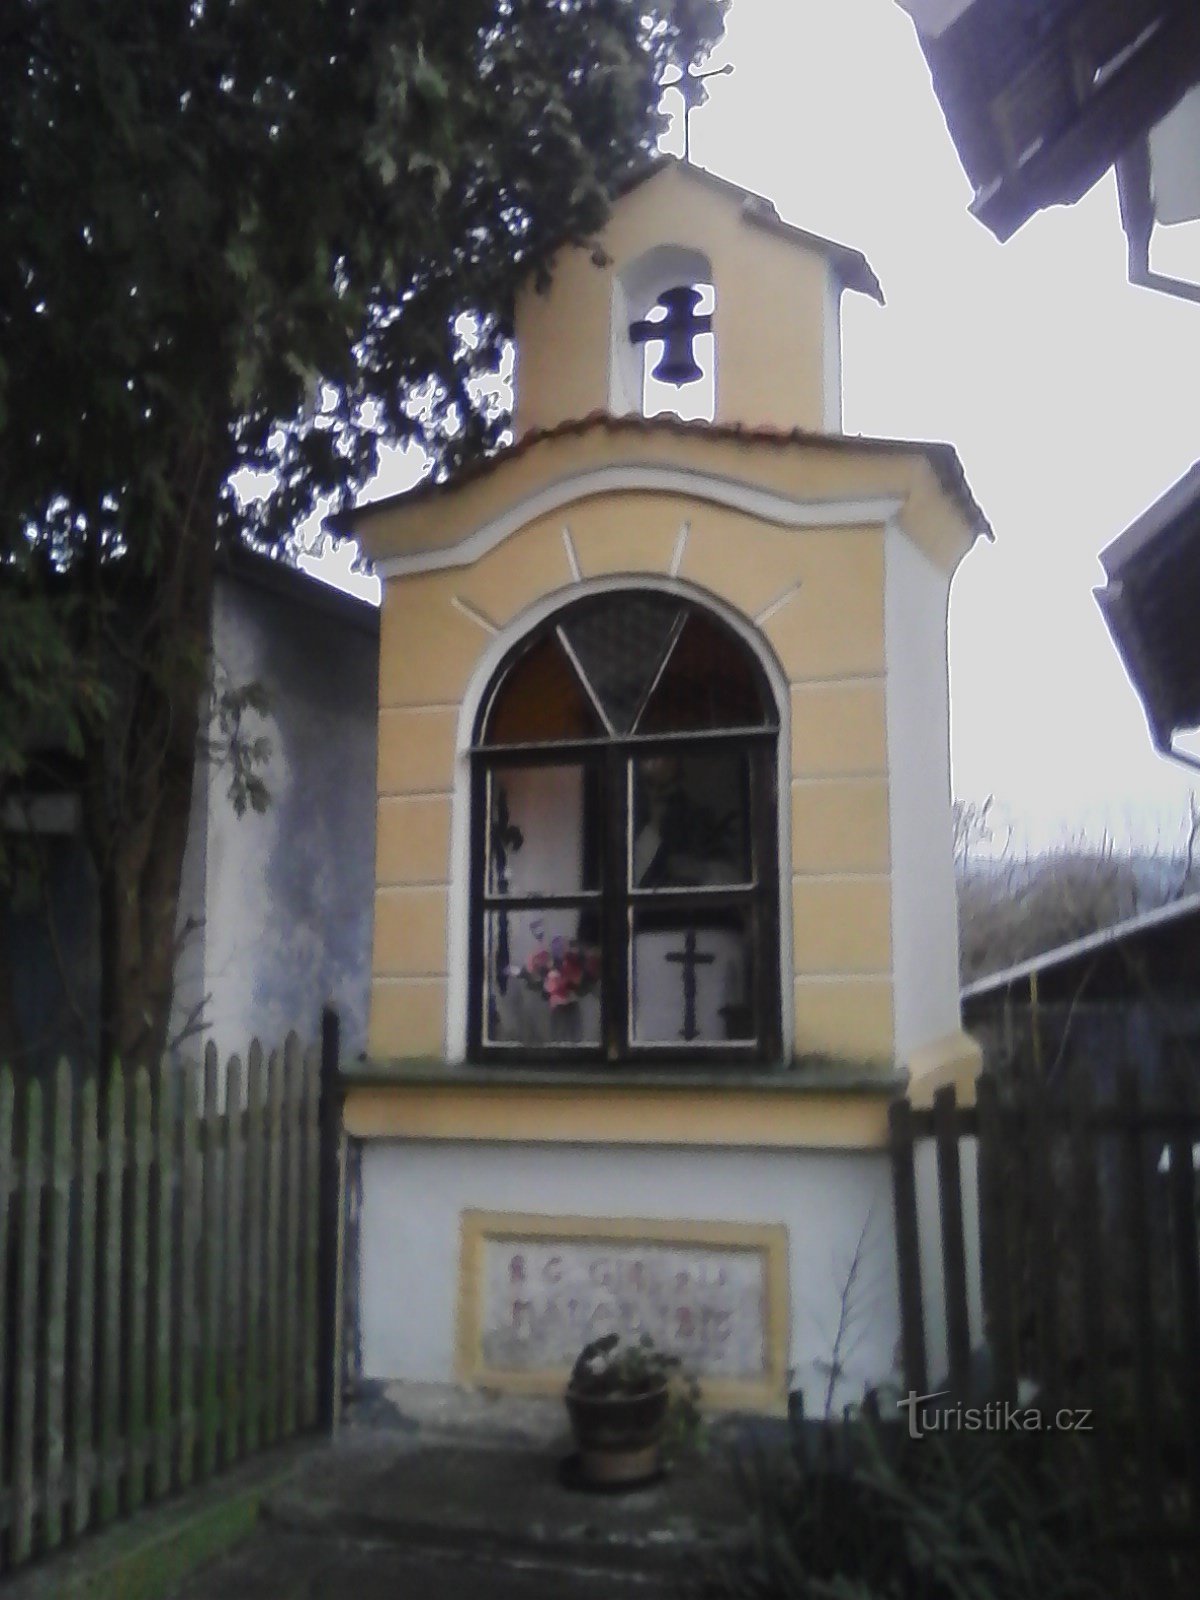 2. Uma pequena capela de nicho em Lidkovice com um campanário e uma cruz de dois braços em v